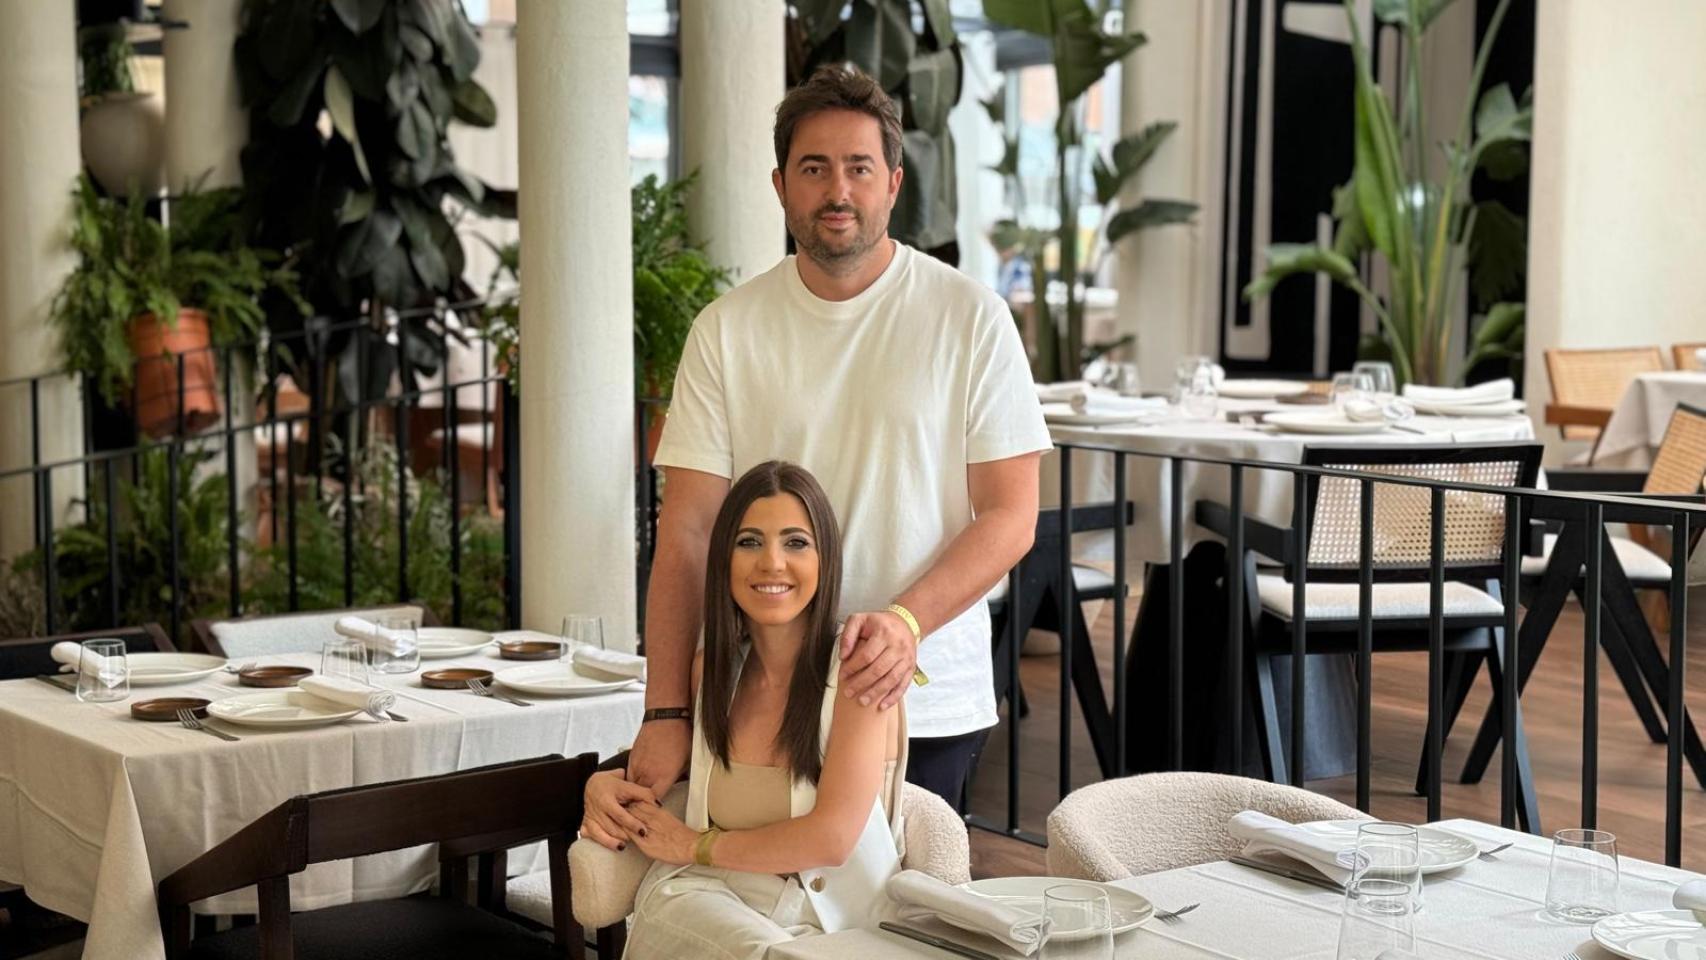 El matrimonio José Agudo Tapias y Alba Buenestado Parrondo en su restaurante Casa Bula.